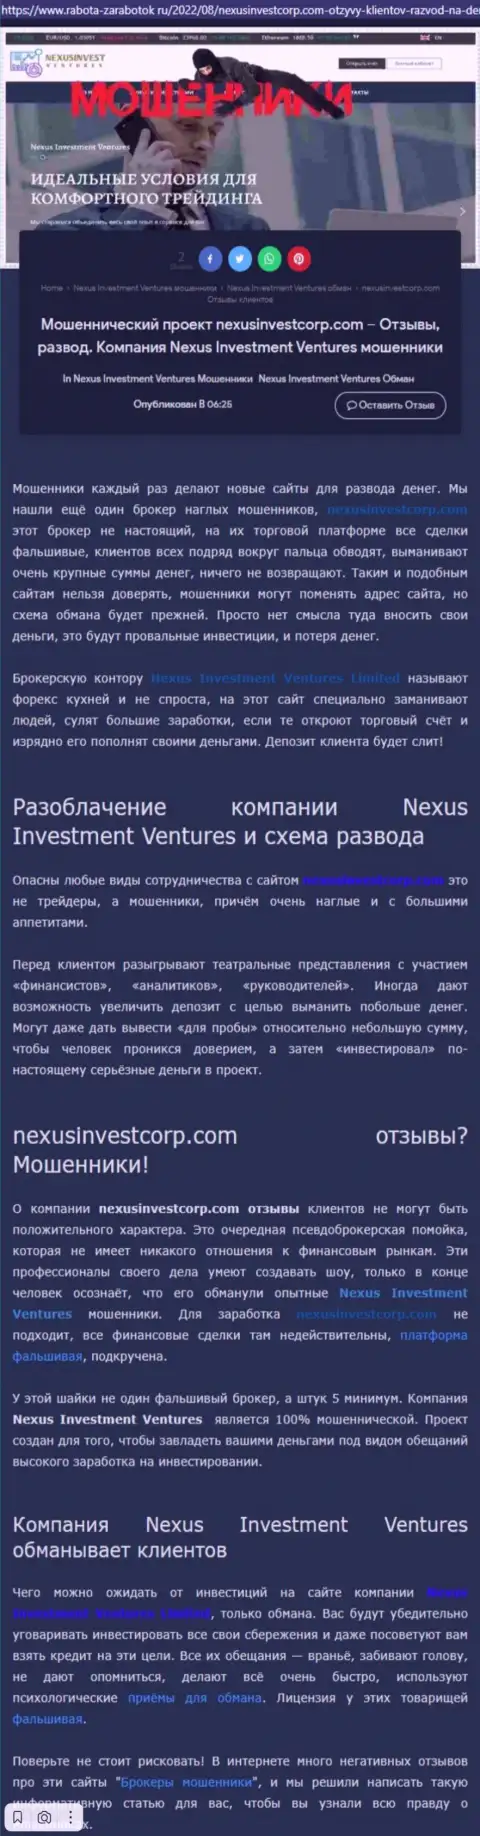 Если же не желаете стать очередной жертвой Nexus Investment Ventures, бегите от них подальше (обзор)